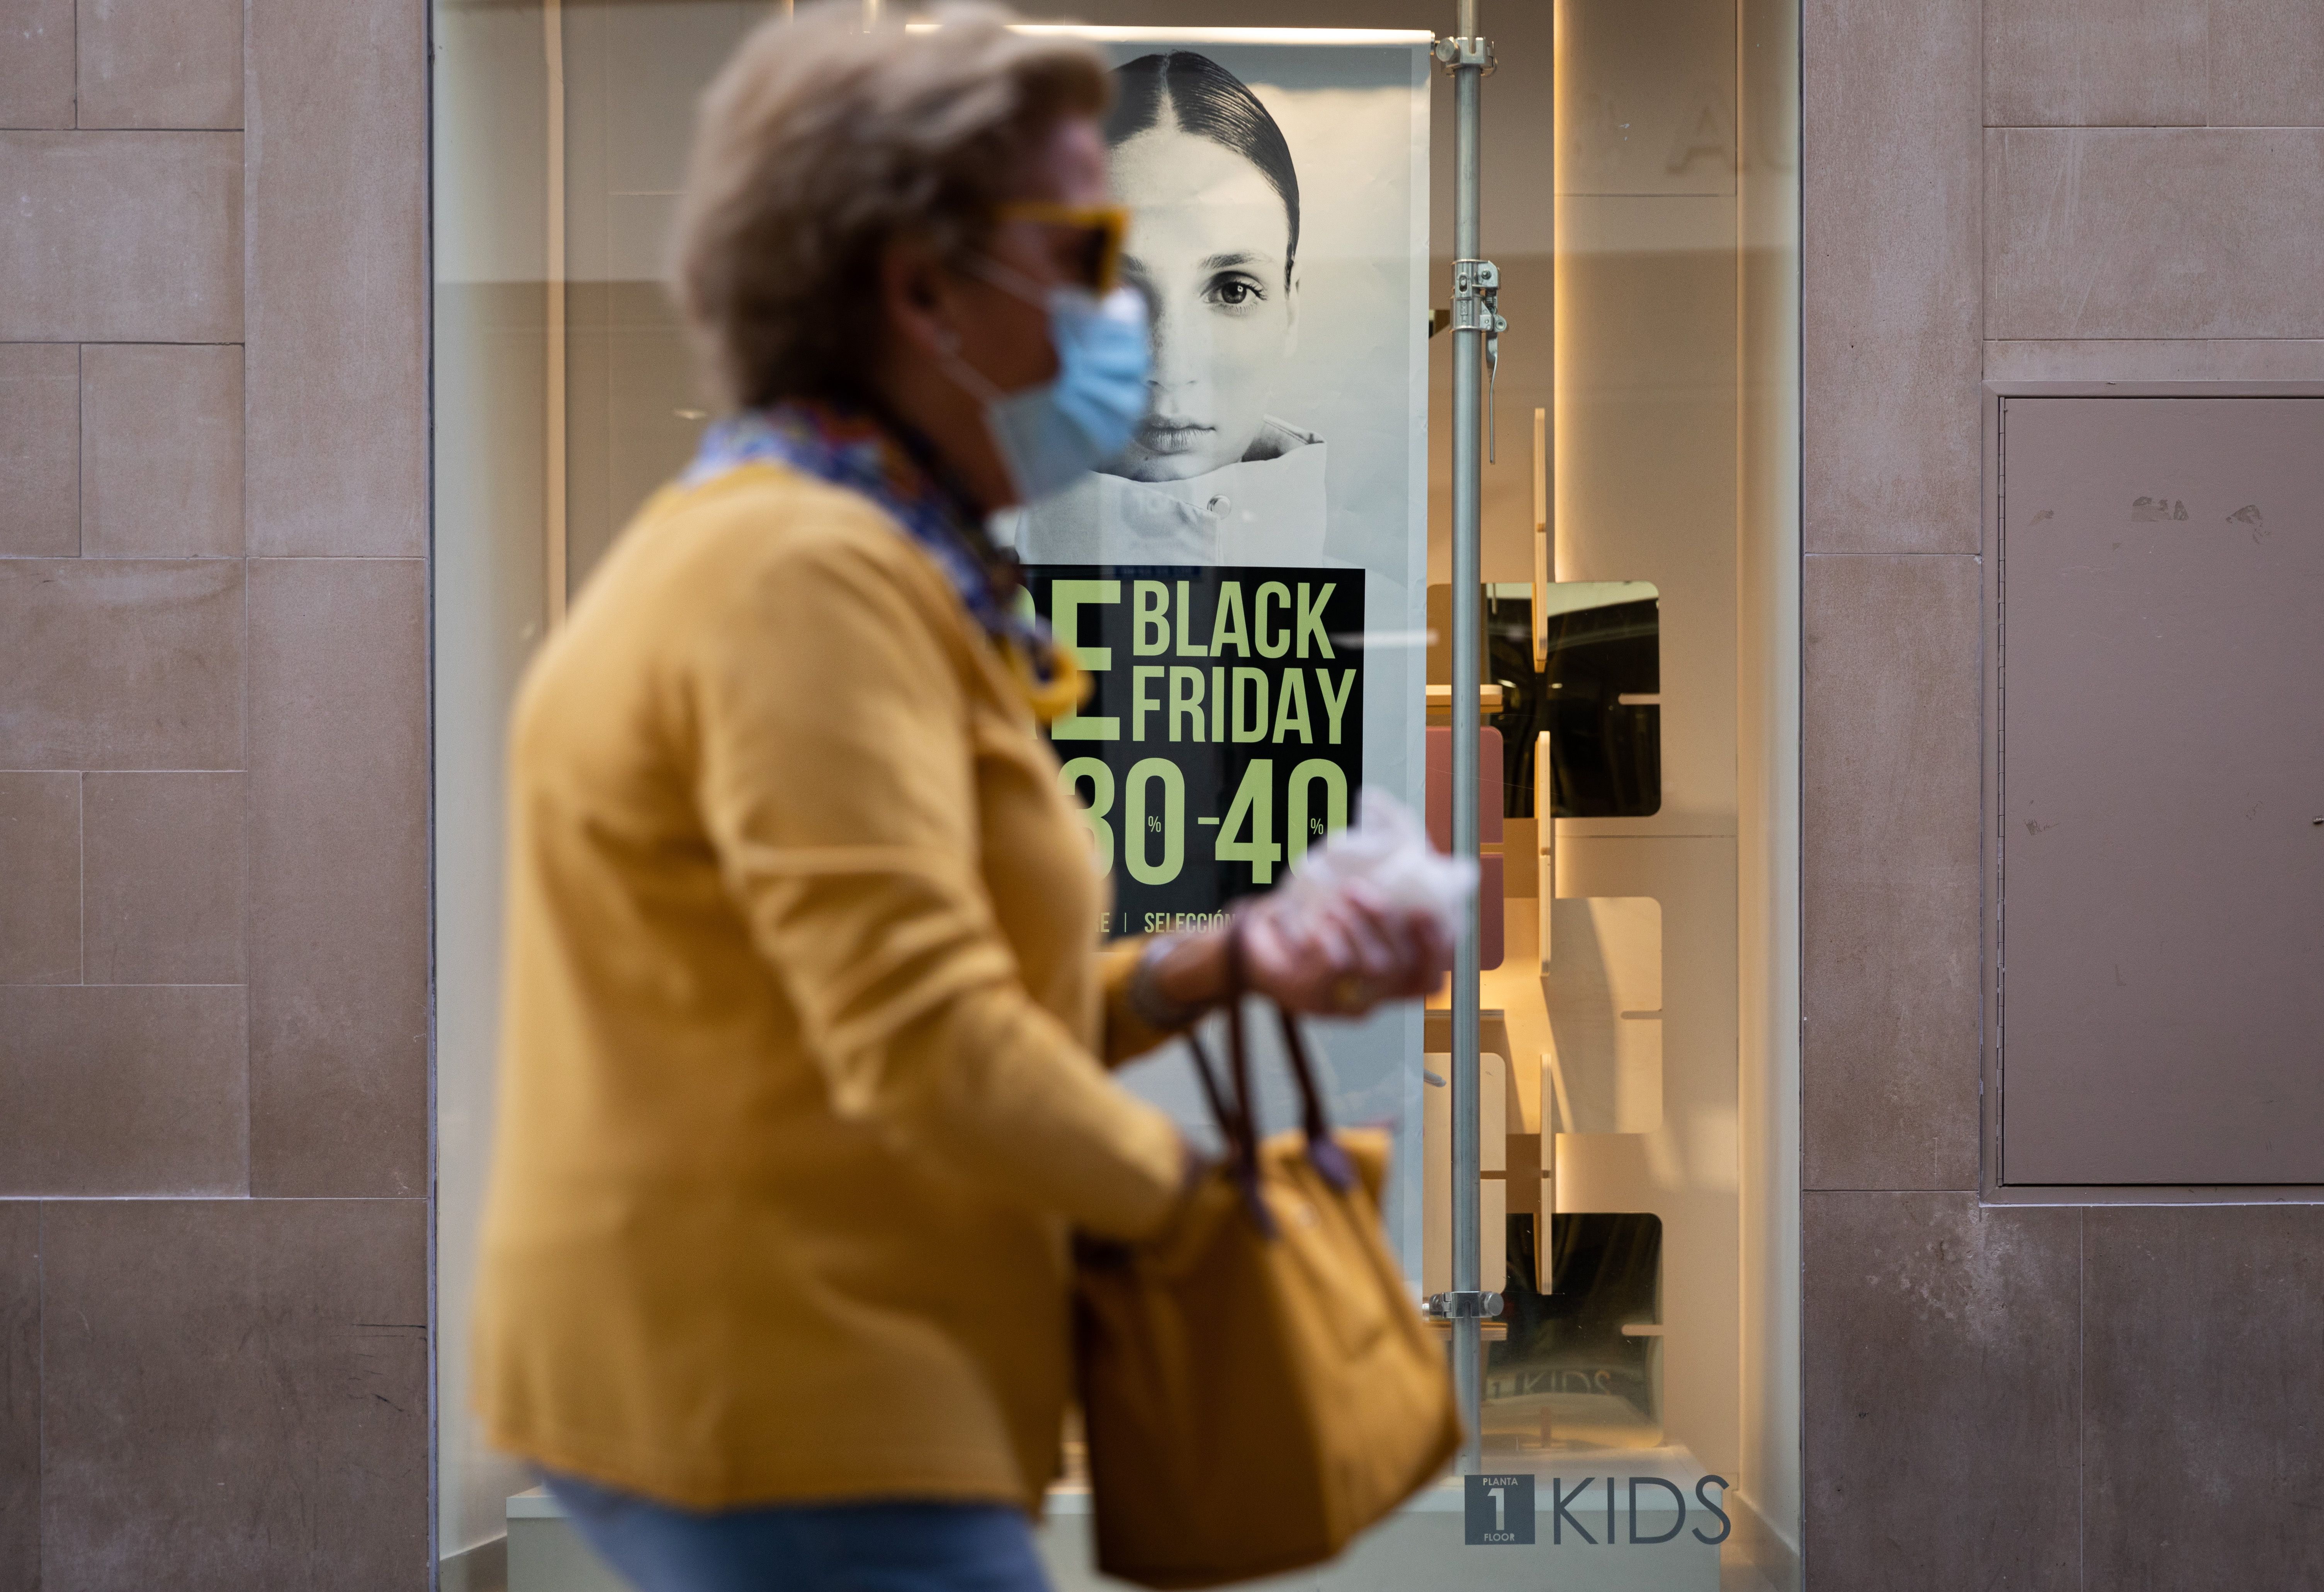 ¡Cuidado con el Black Friday! Consejos del Banco de España para comprar de forma segura